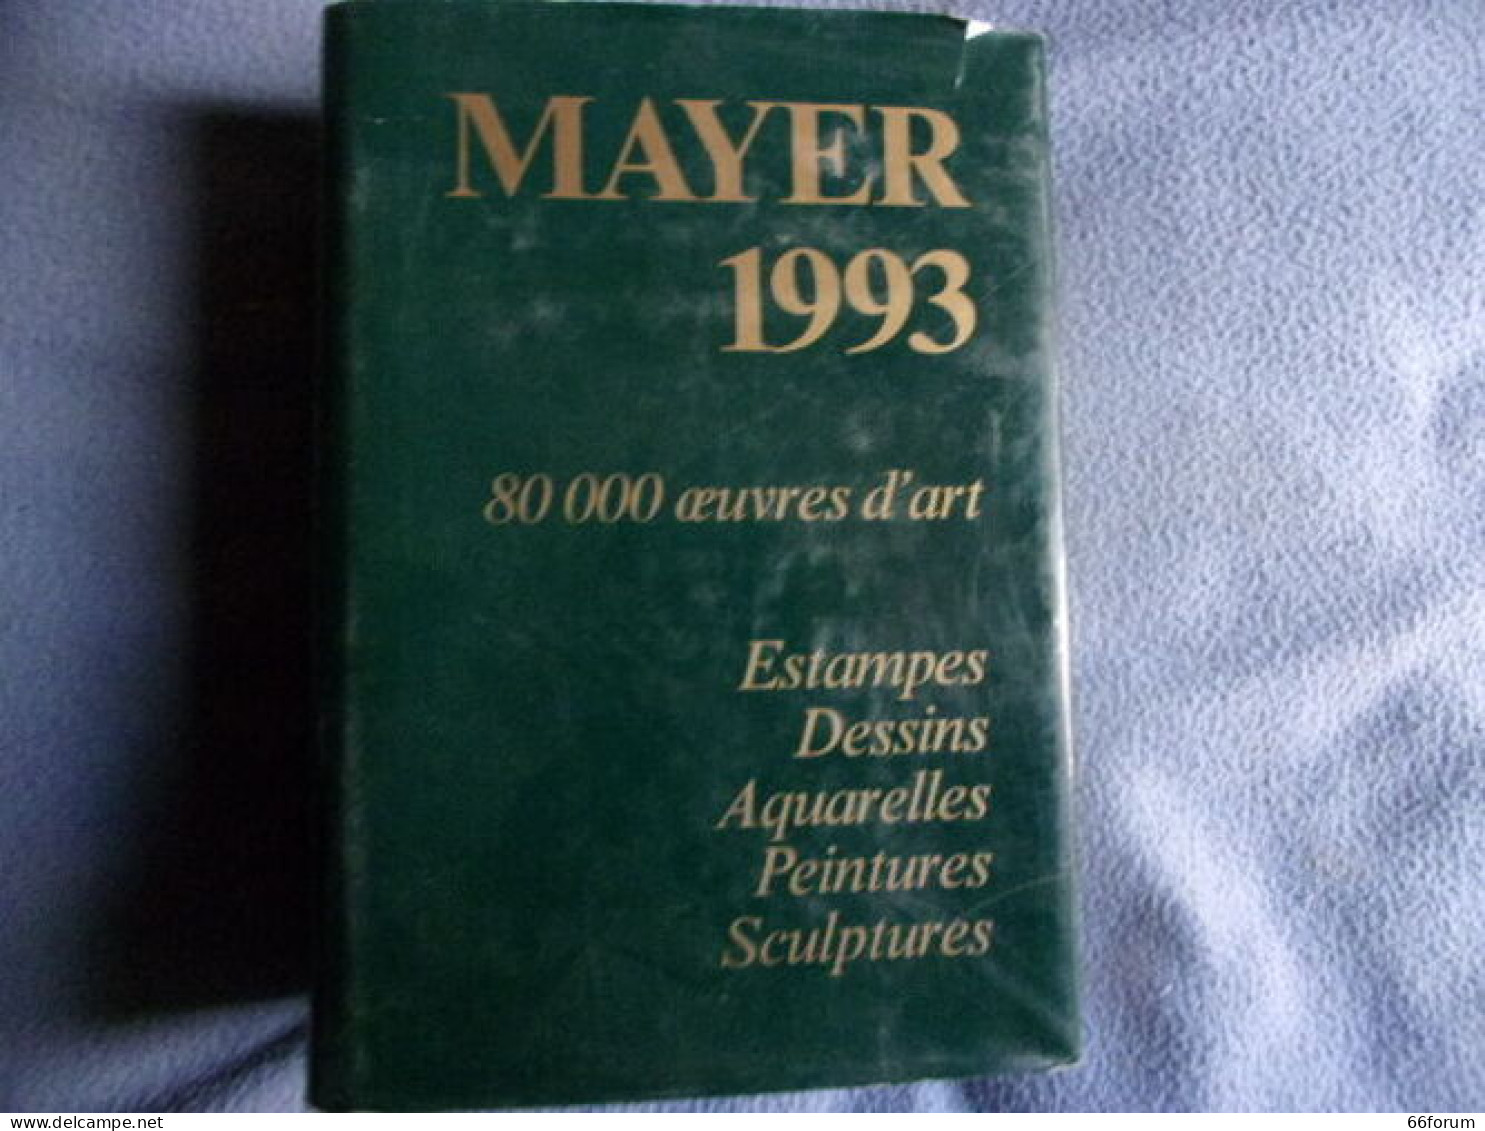 Mayer 1993 - 80000 Prix De Ventes - Art